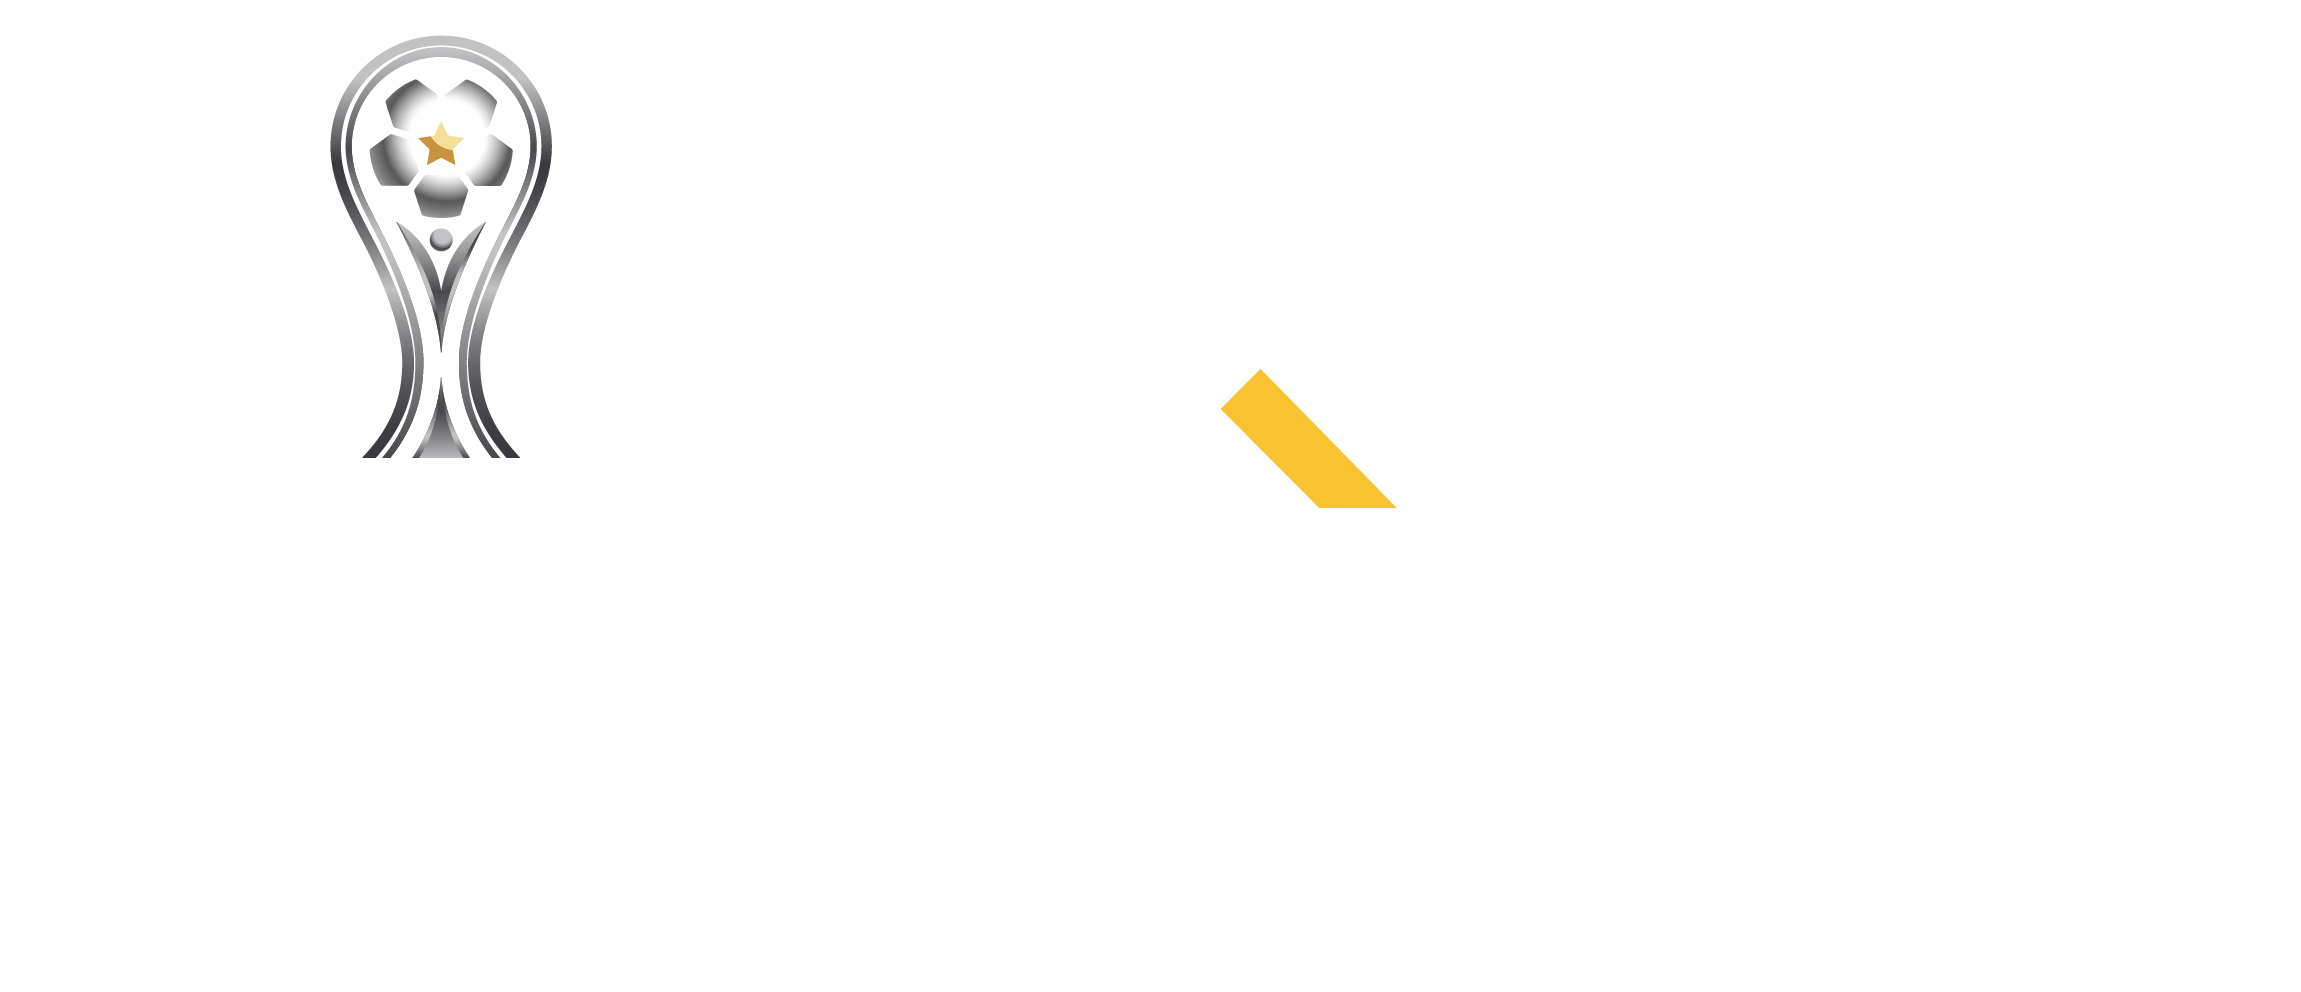 PayRetailers Oficial de la Conmebol sul-americana